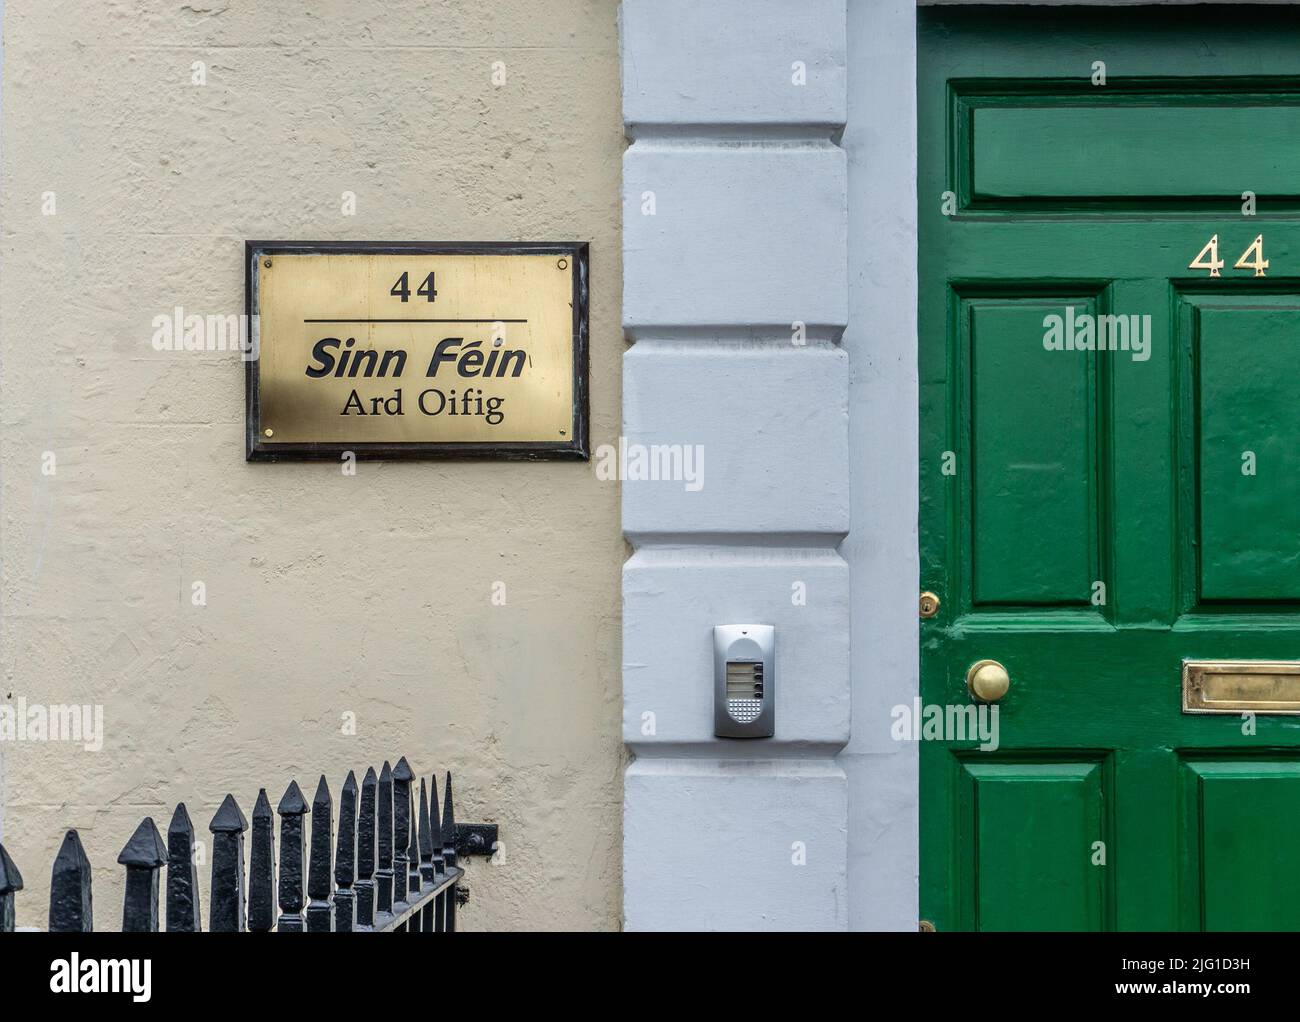 Das Zeichen für Sinn Féin, die irische politische Partei, vor ihren Büros am Parnell Square in Dublin, Irland. Stockfoto